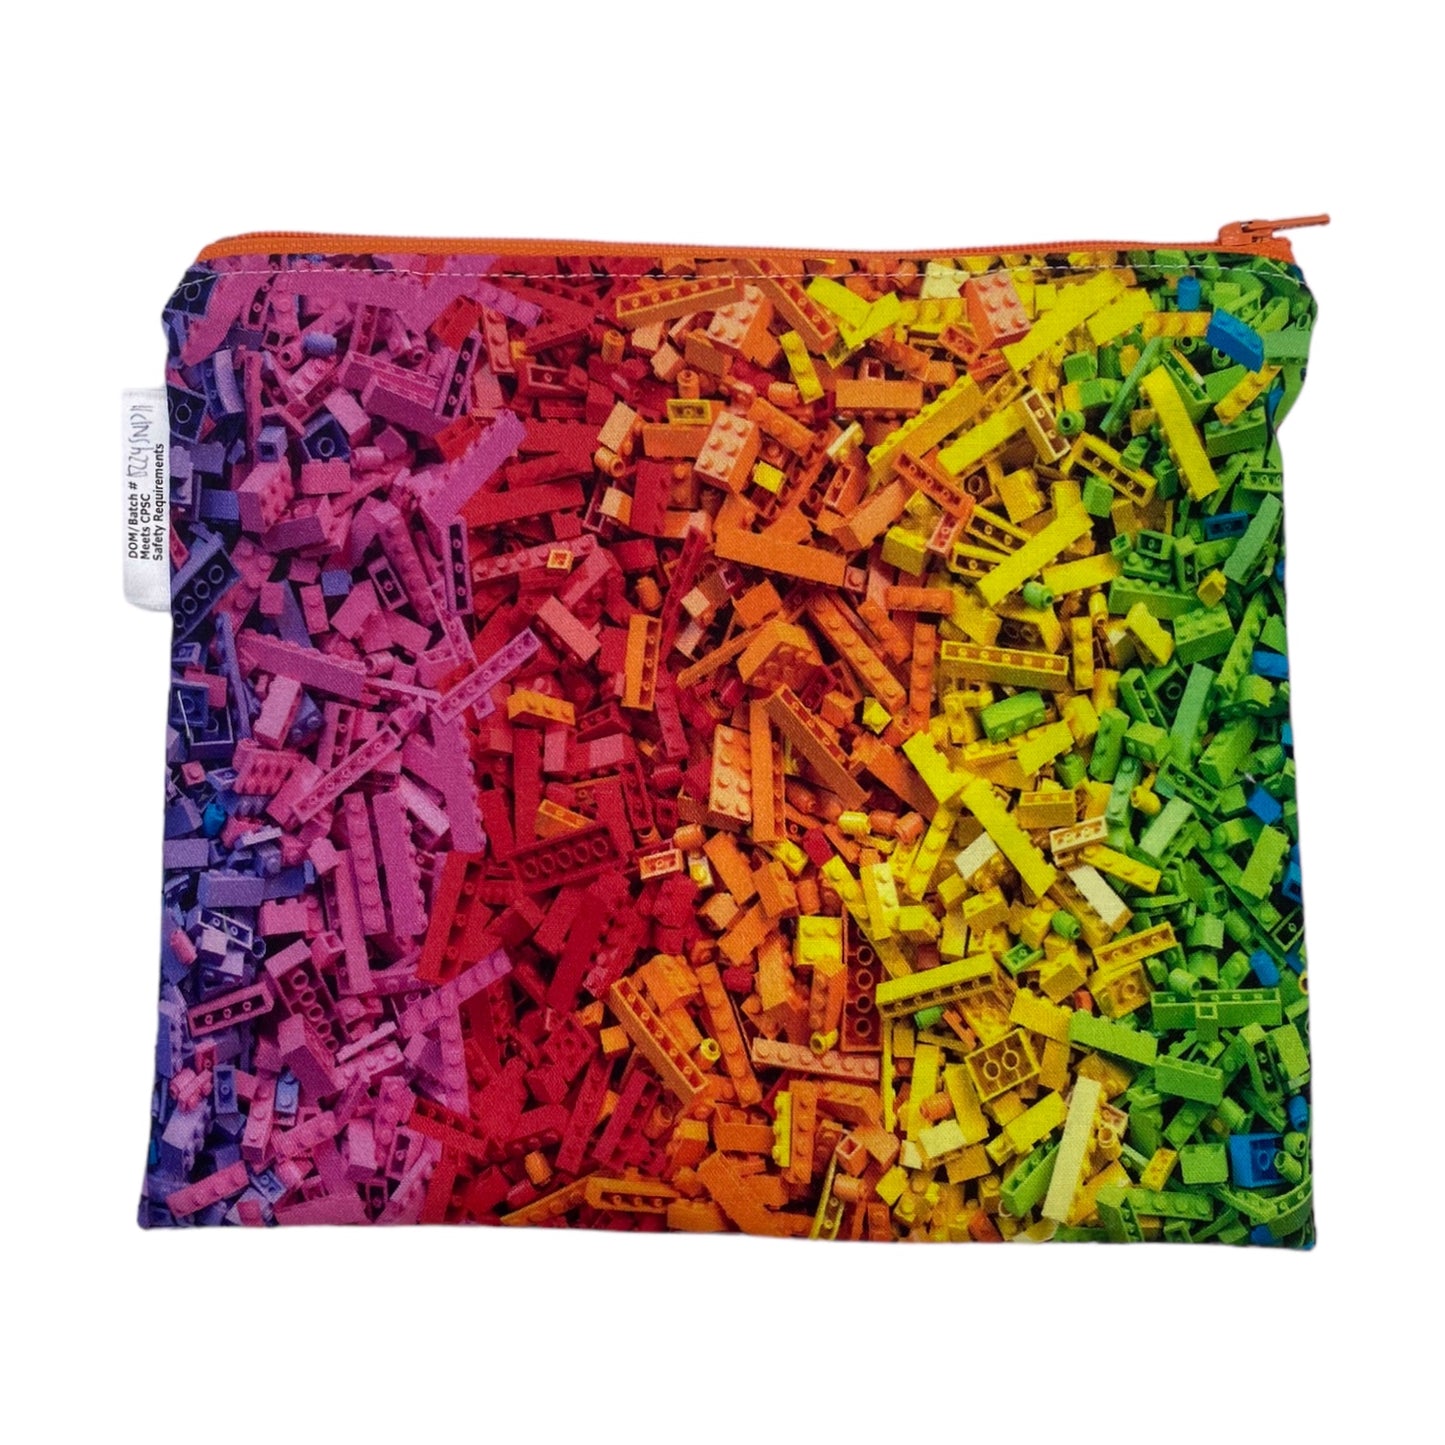 Sandwich Sized Reusable Zippered Bag Building Bricks Rainbow